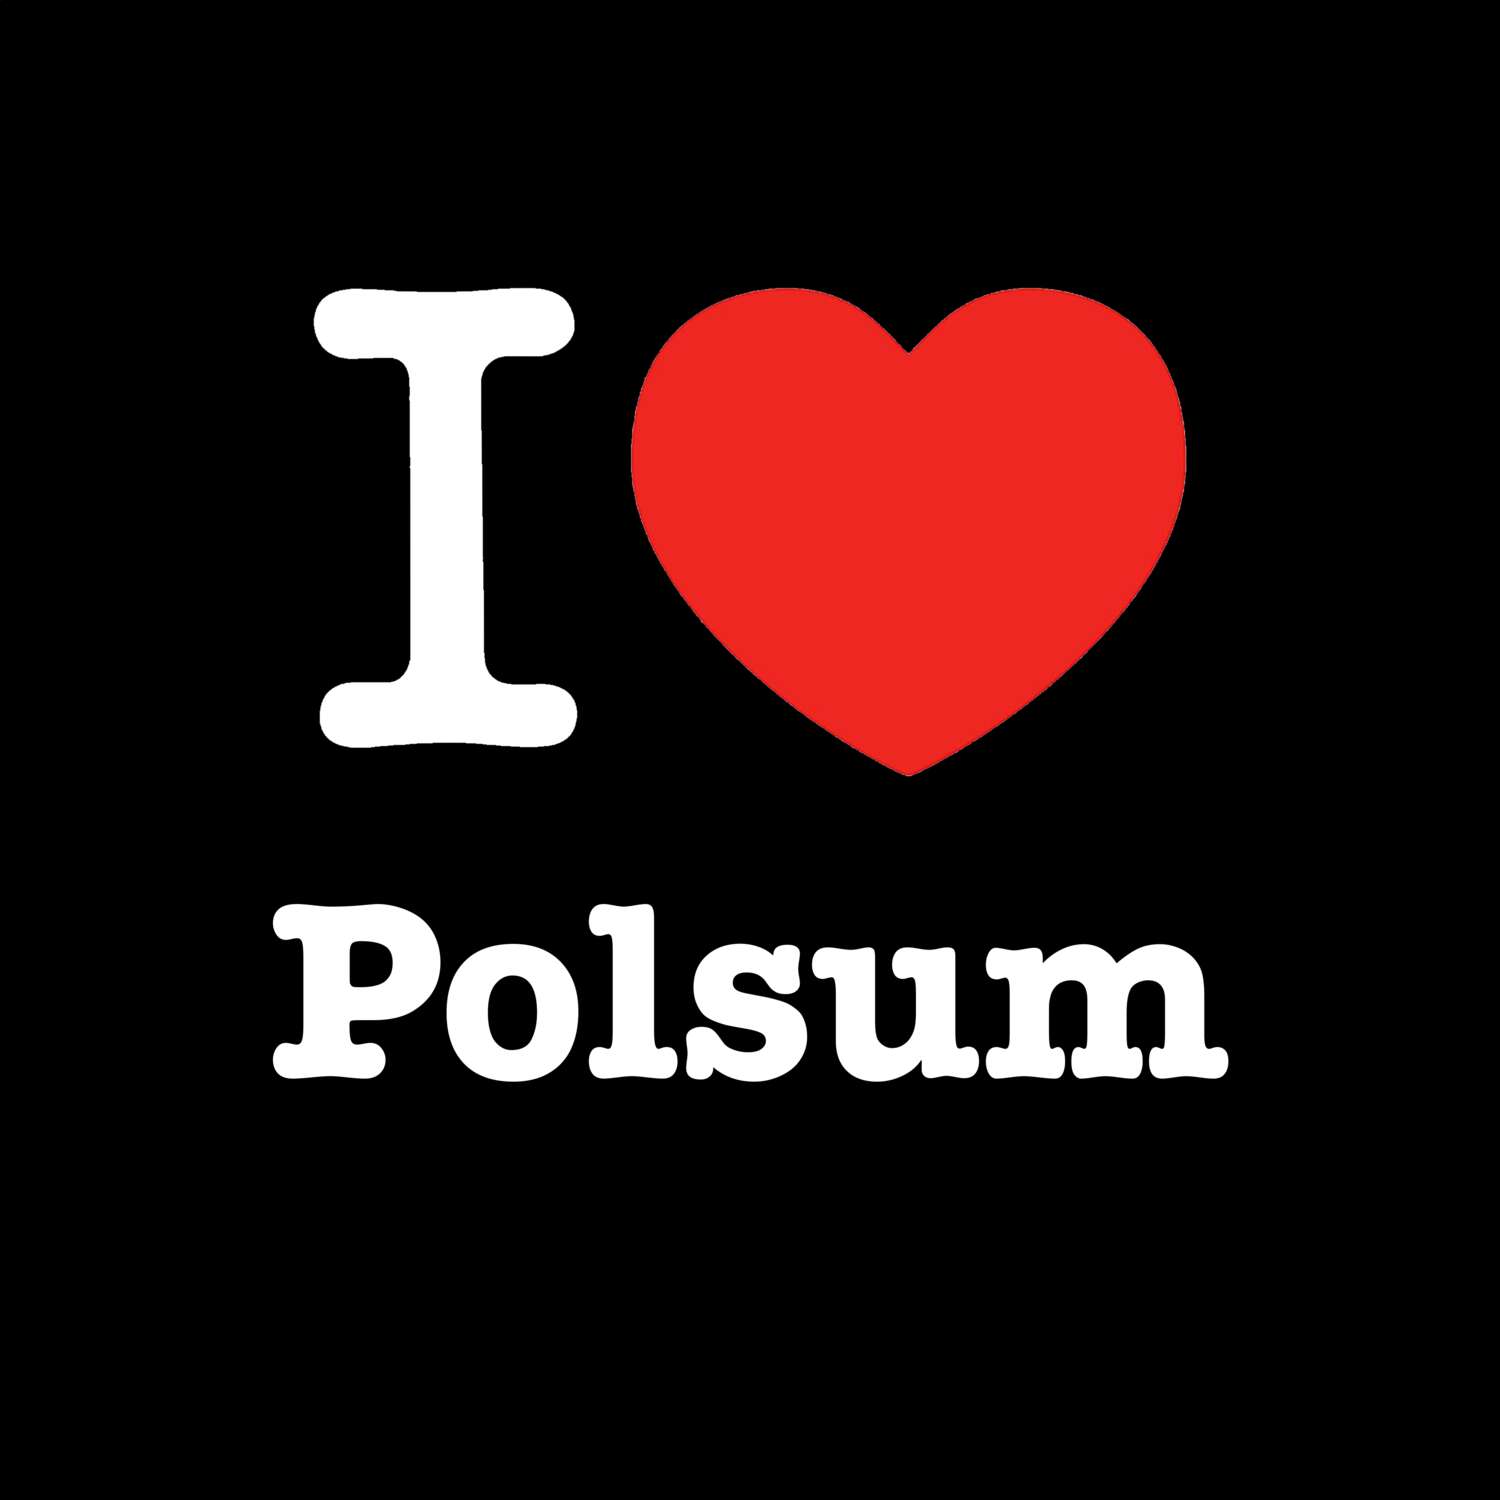 Polsum T-Shirt »I love«